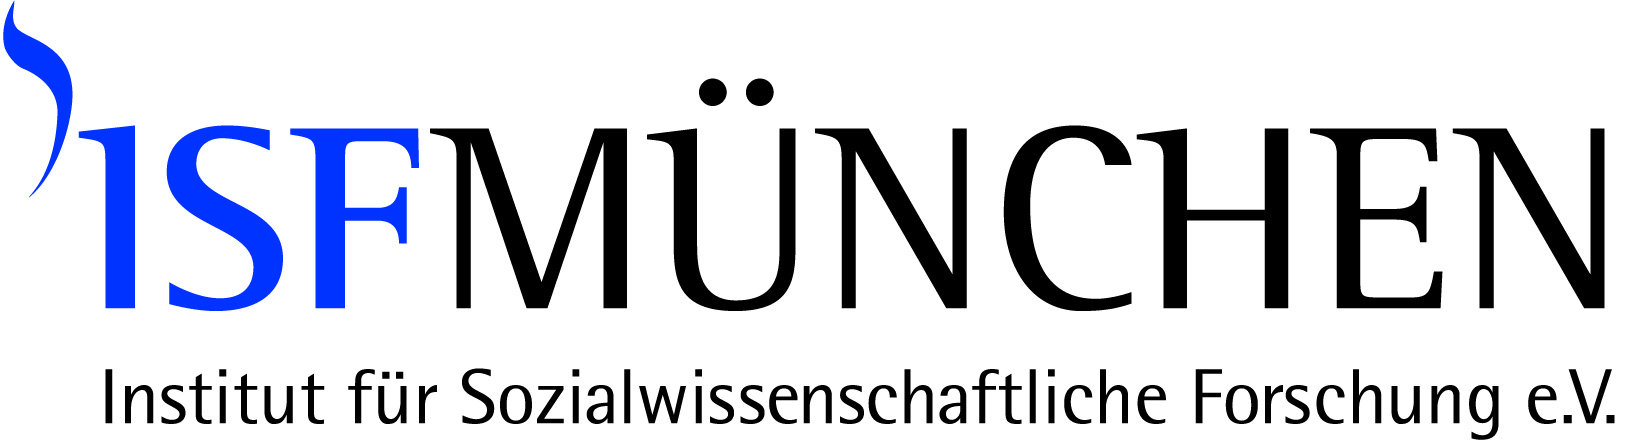 Logo: ISF München - Institut für Sozialwissenschaftliche Forschung e.V.